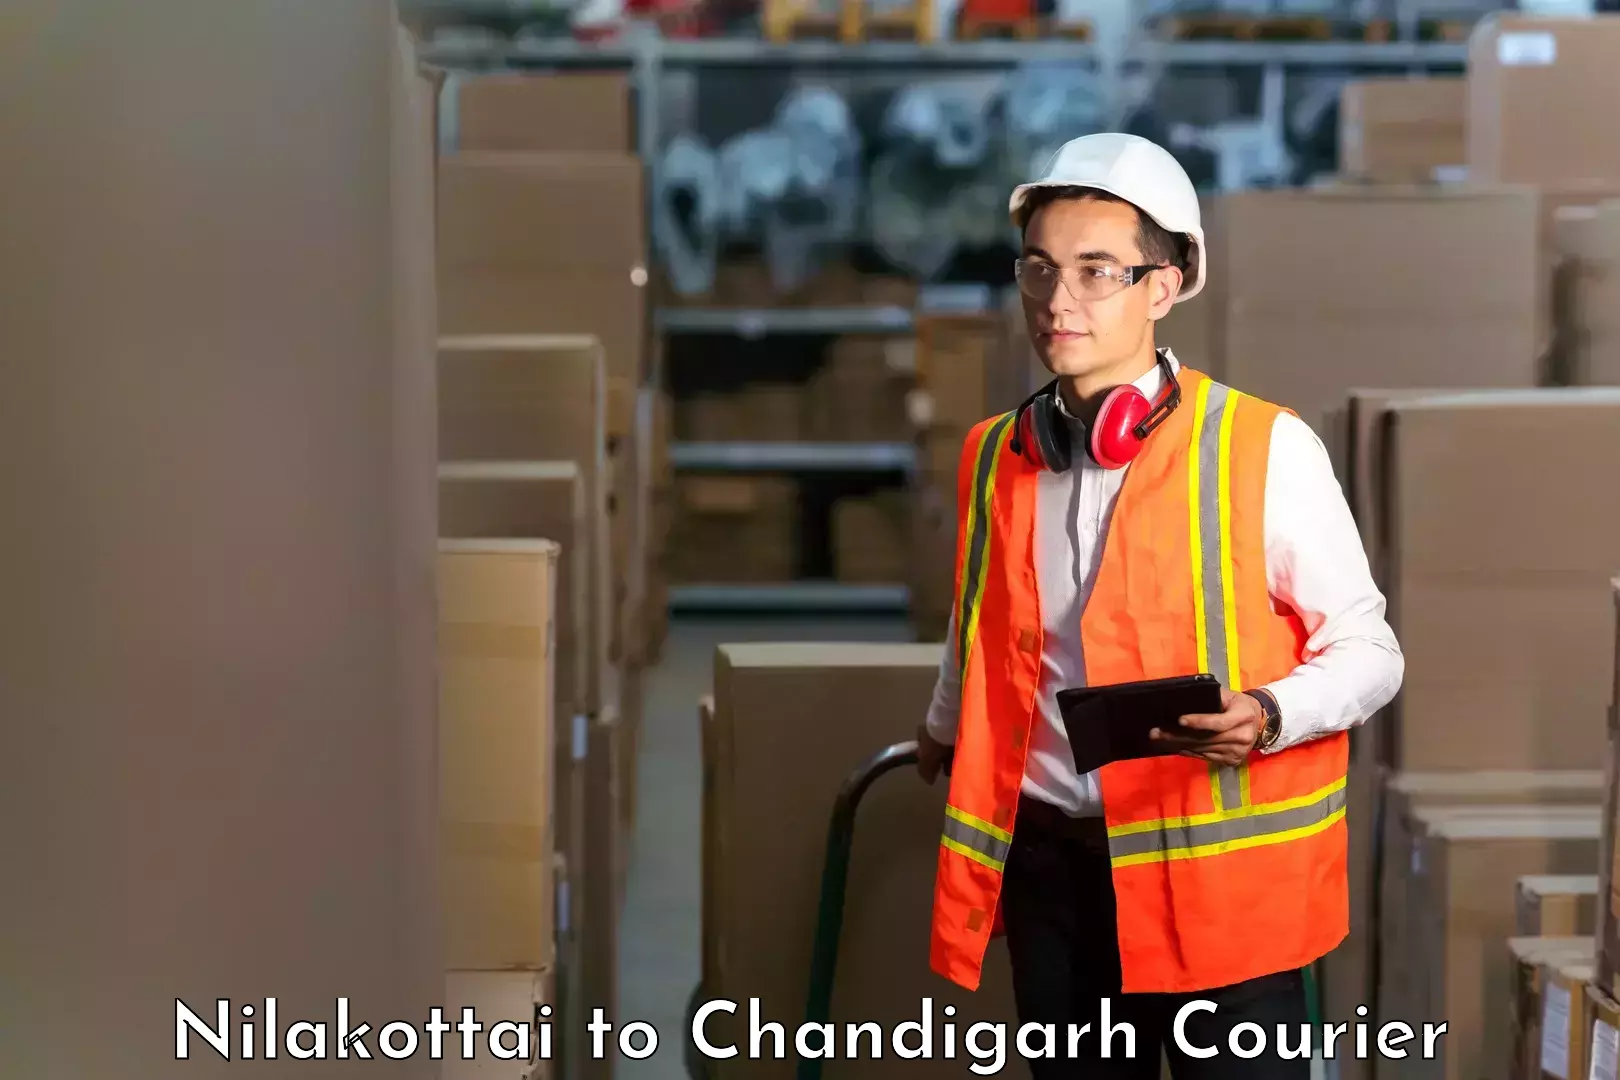 Secure shipping methods Nilakottai to Chandigarh